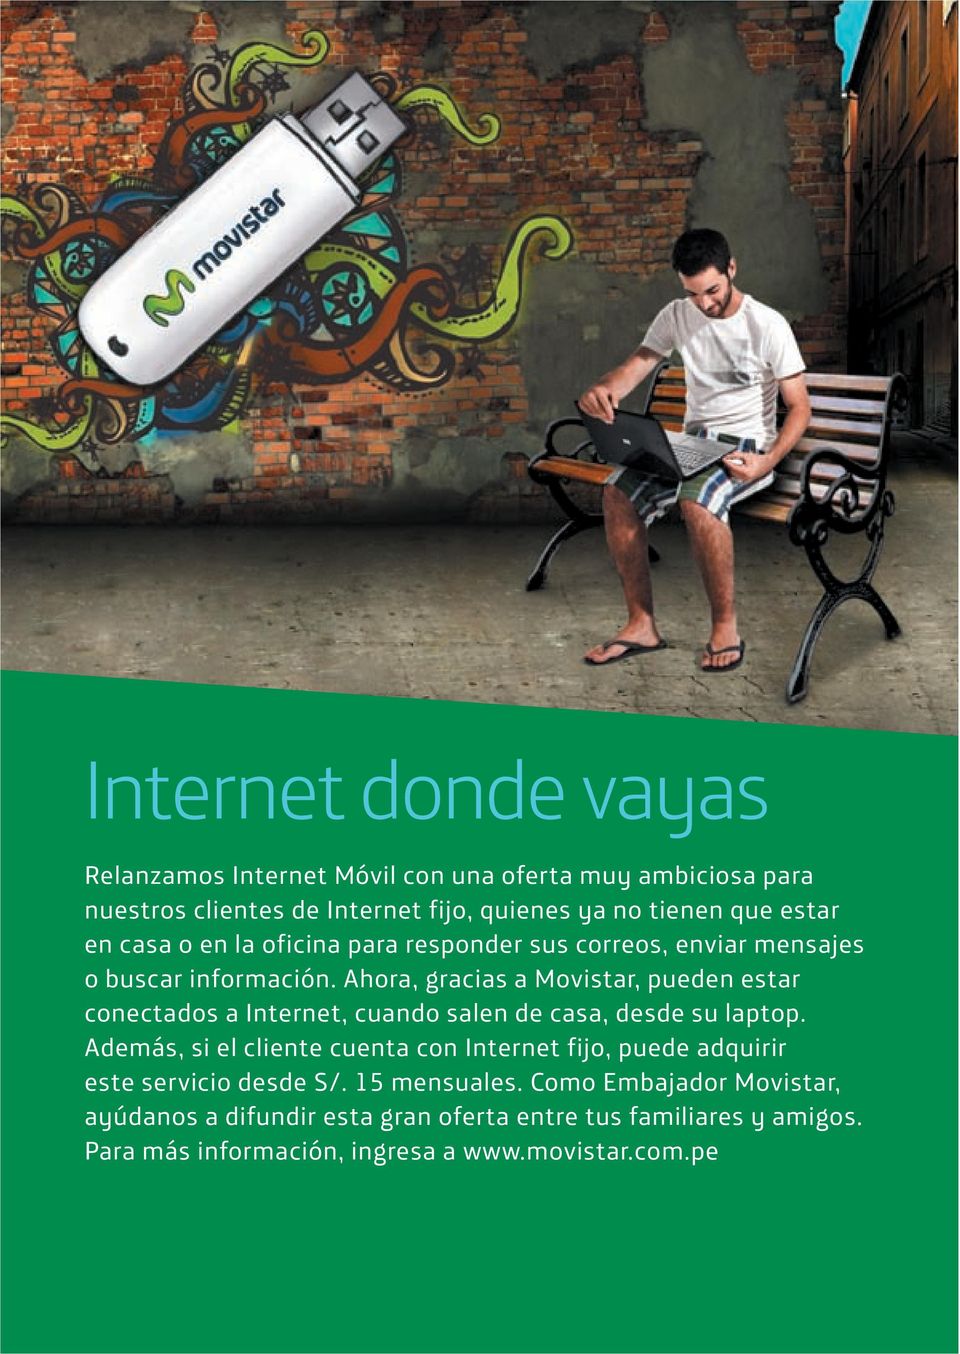 Ahora, gracias a Movistar, pueden estar conectados a Internet, cuando salen de casa, desde su laptop.